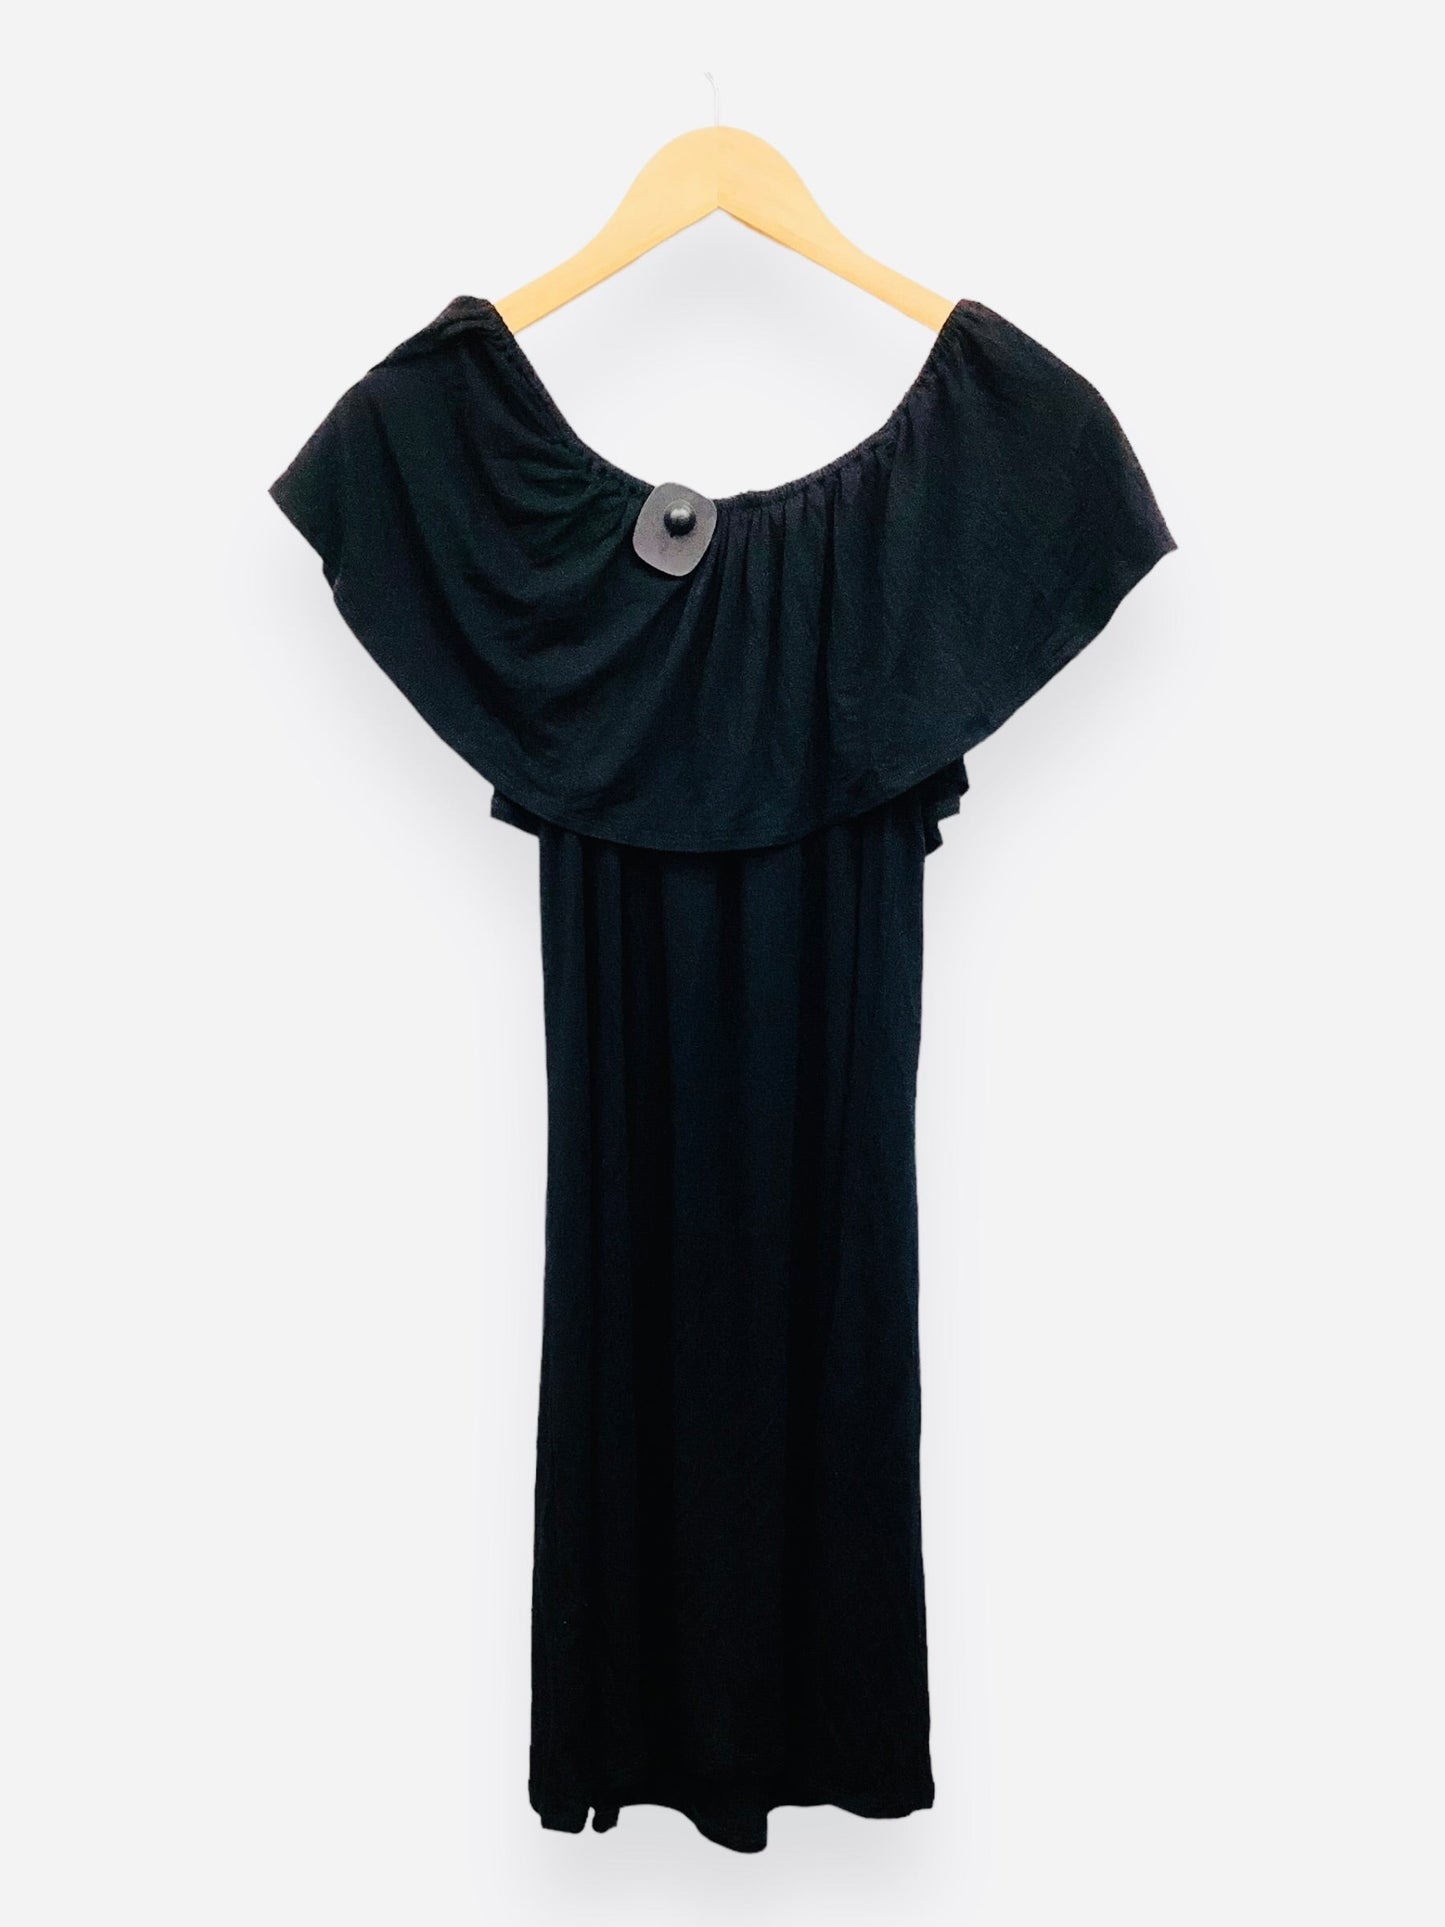 NWT Black Dress Casual Midi Spense, Size Petite L